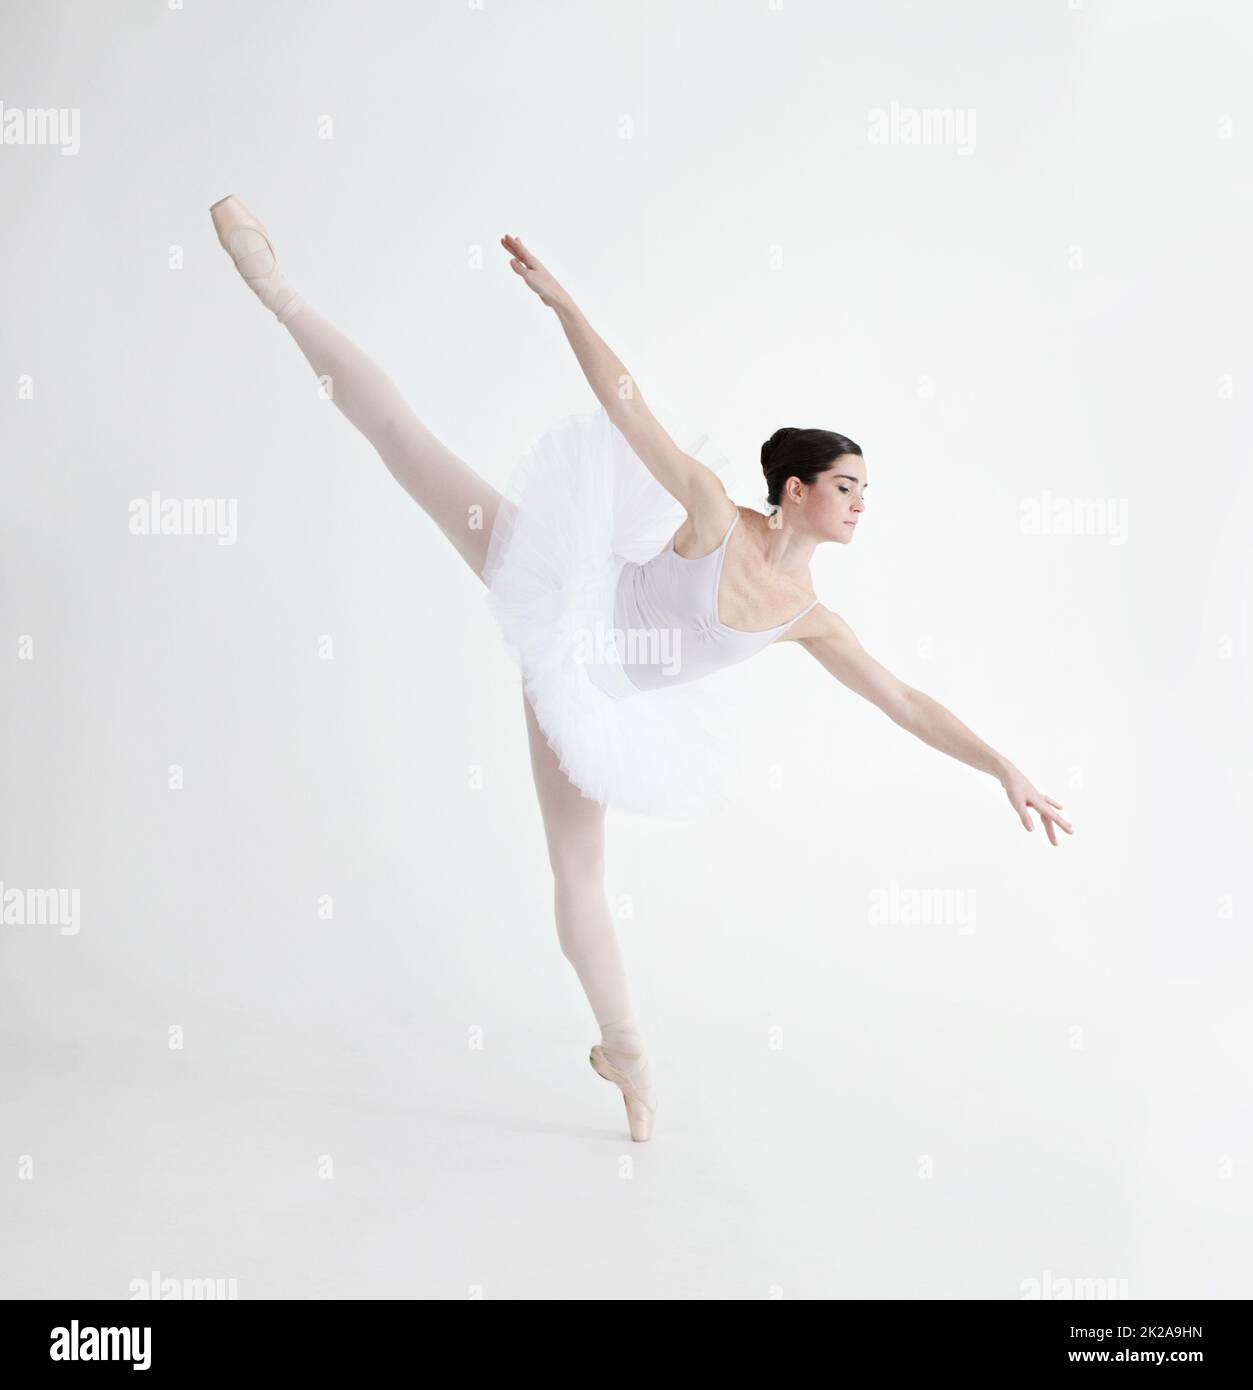 El equilibrio es crucial. Bailarina joven y elegante bailando en pointe sobre un fondo blanco en posición de penche. Foto de stock